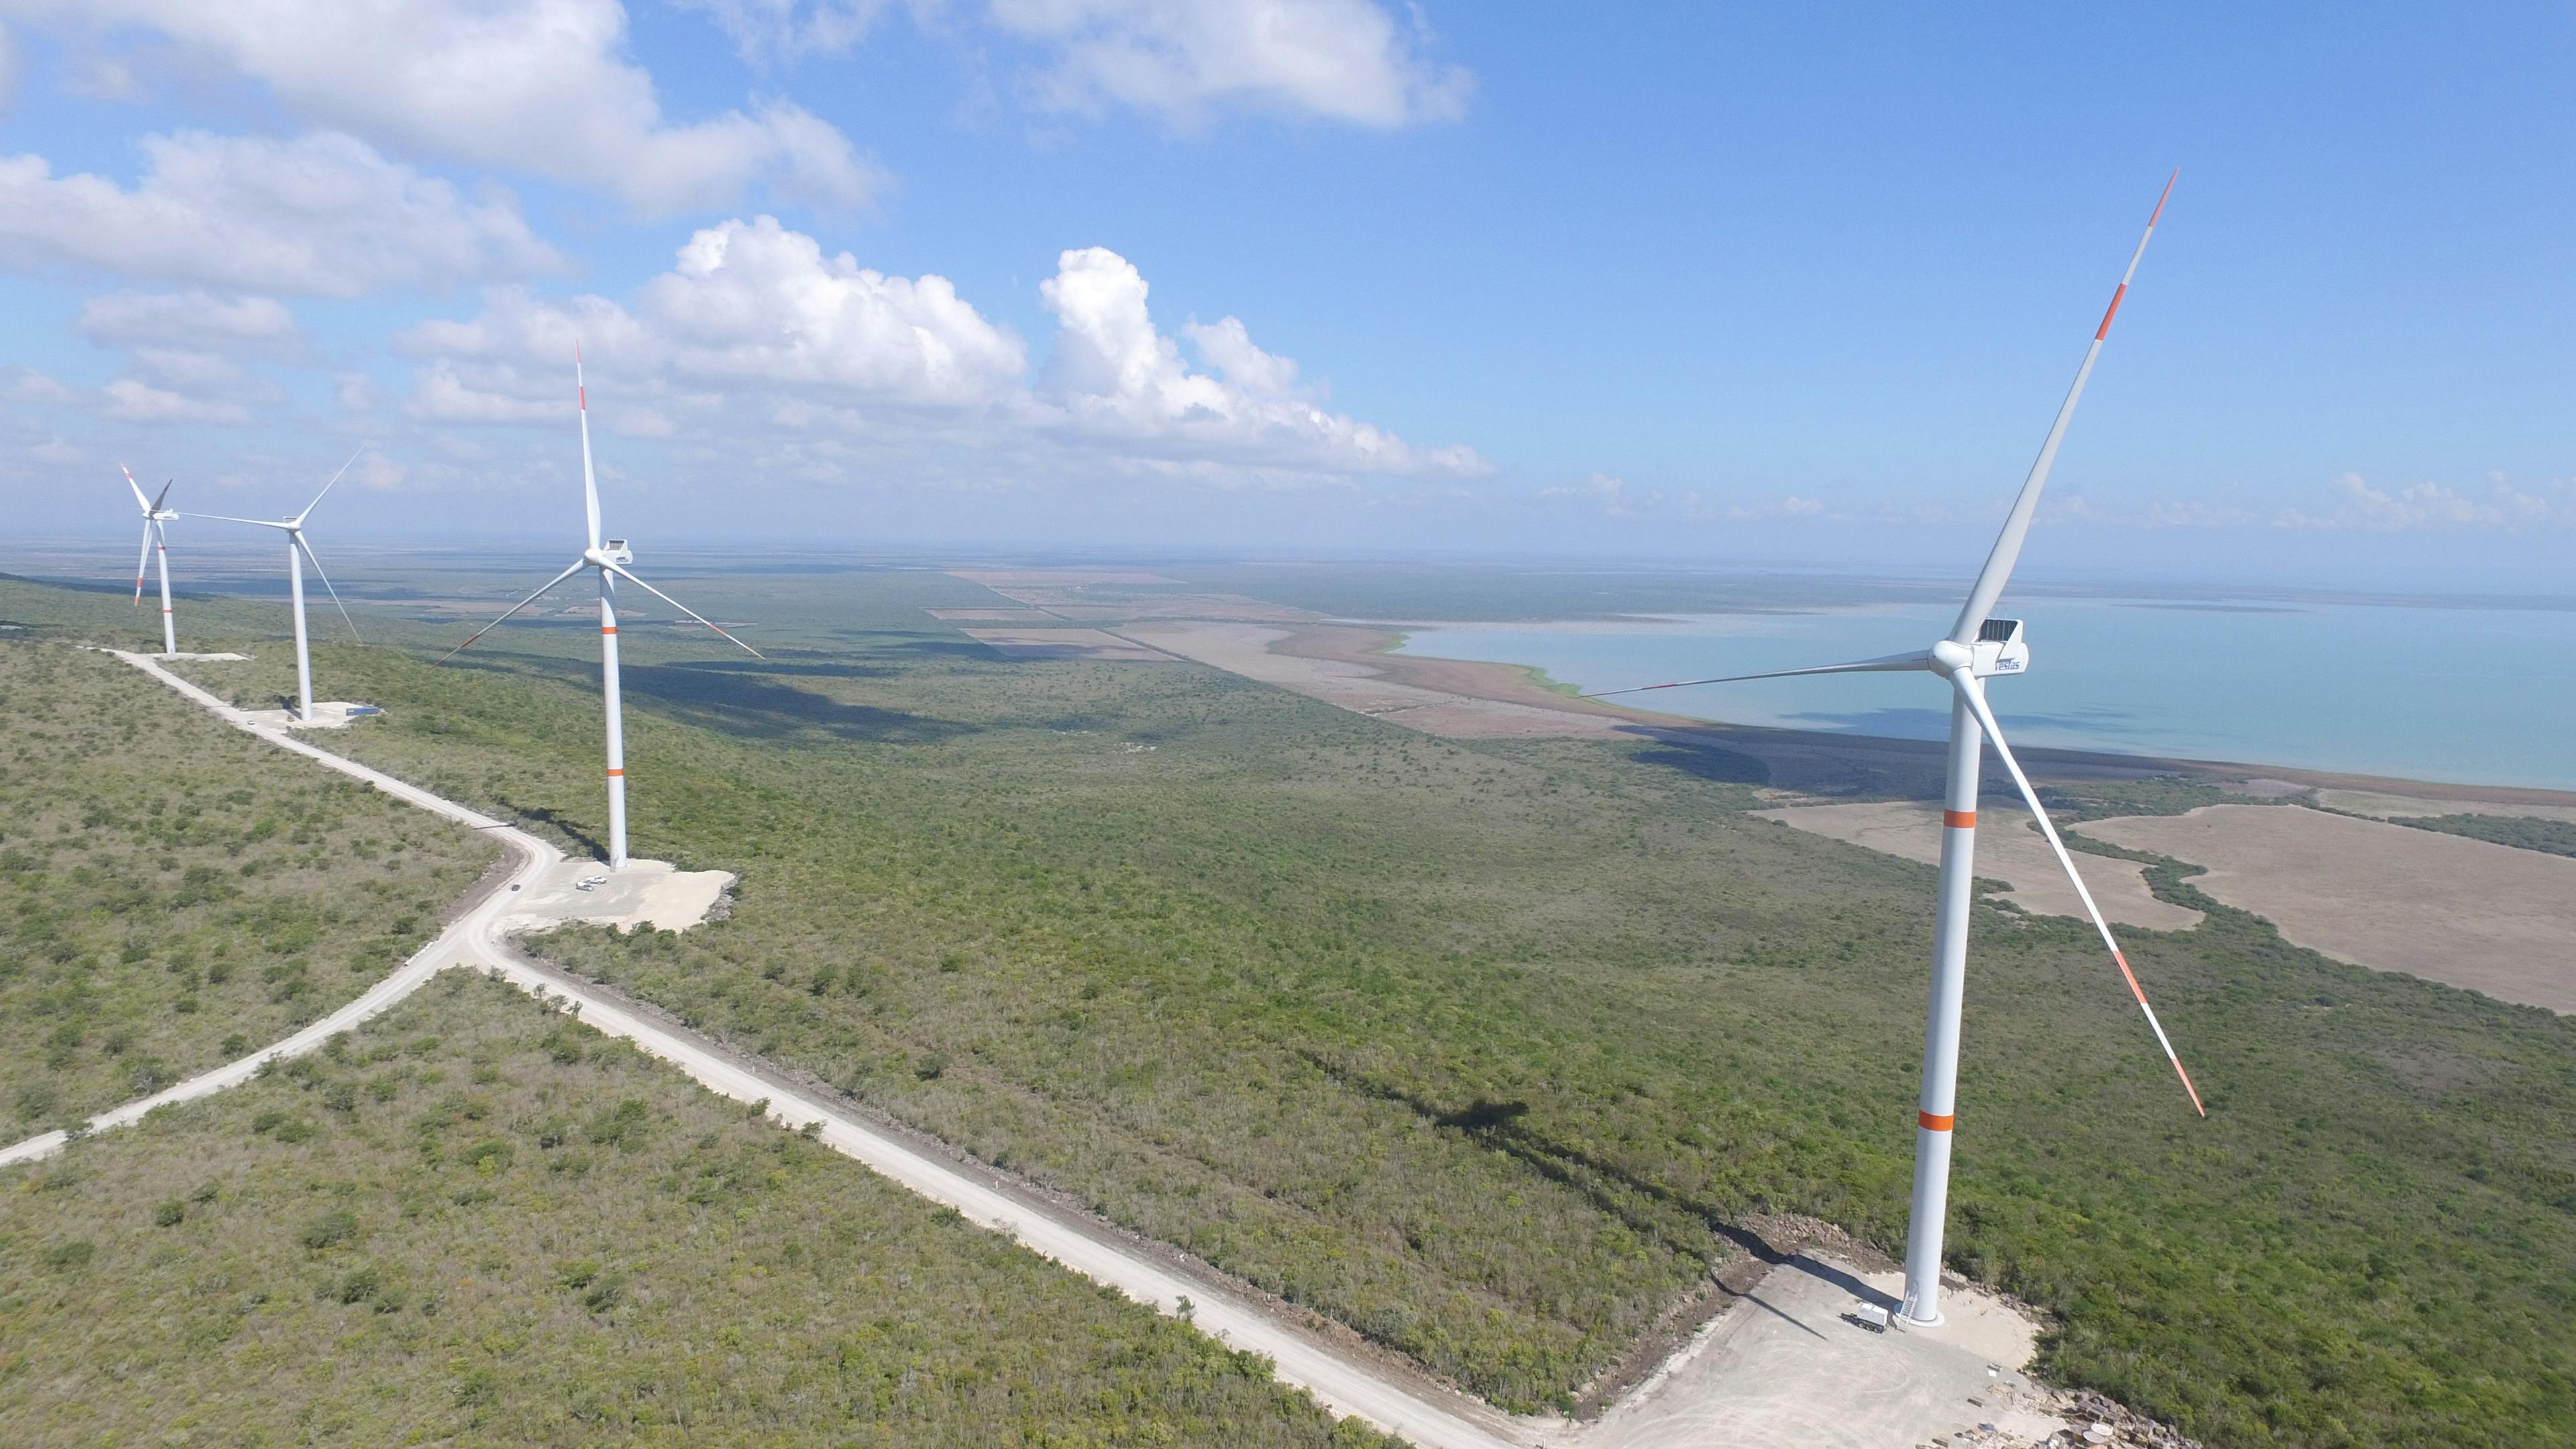 Ciudad Victoria & La Mesa wind farms in Tamaulipas, Mexico